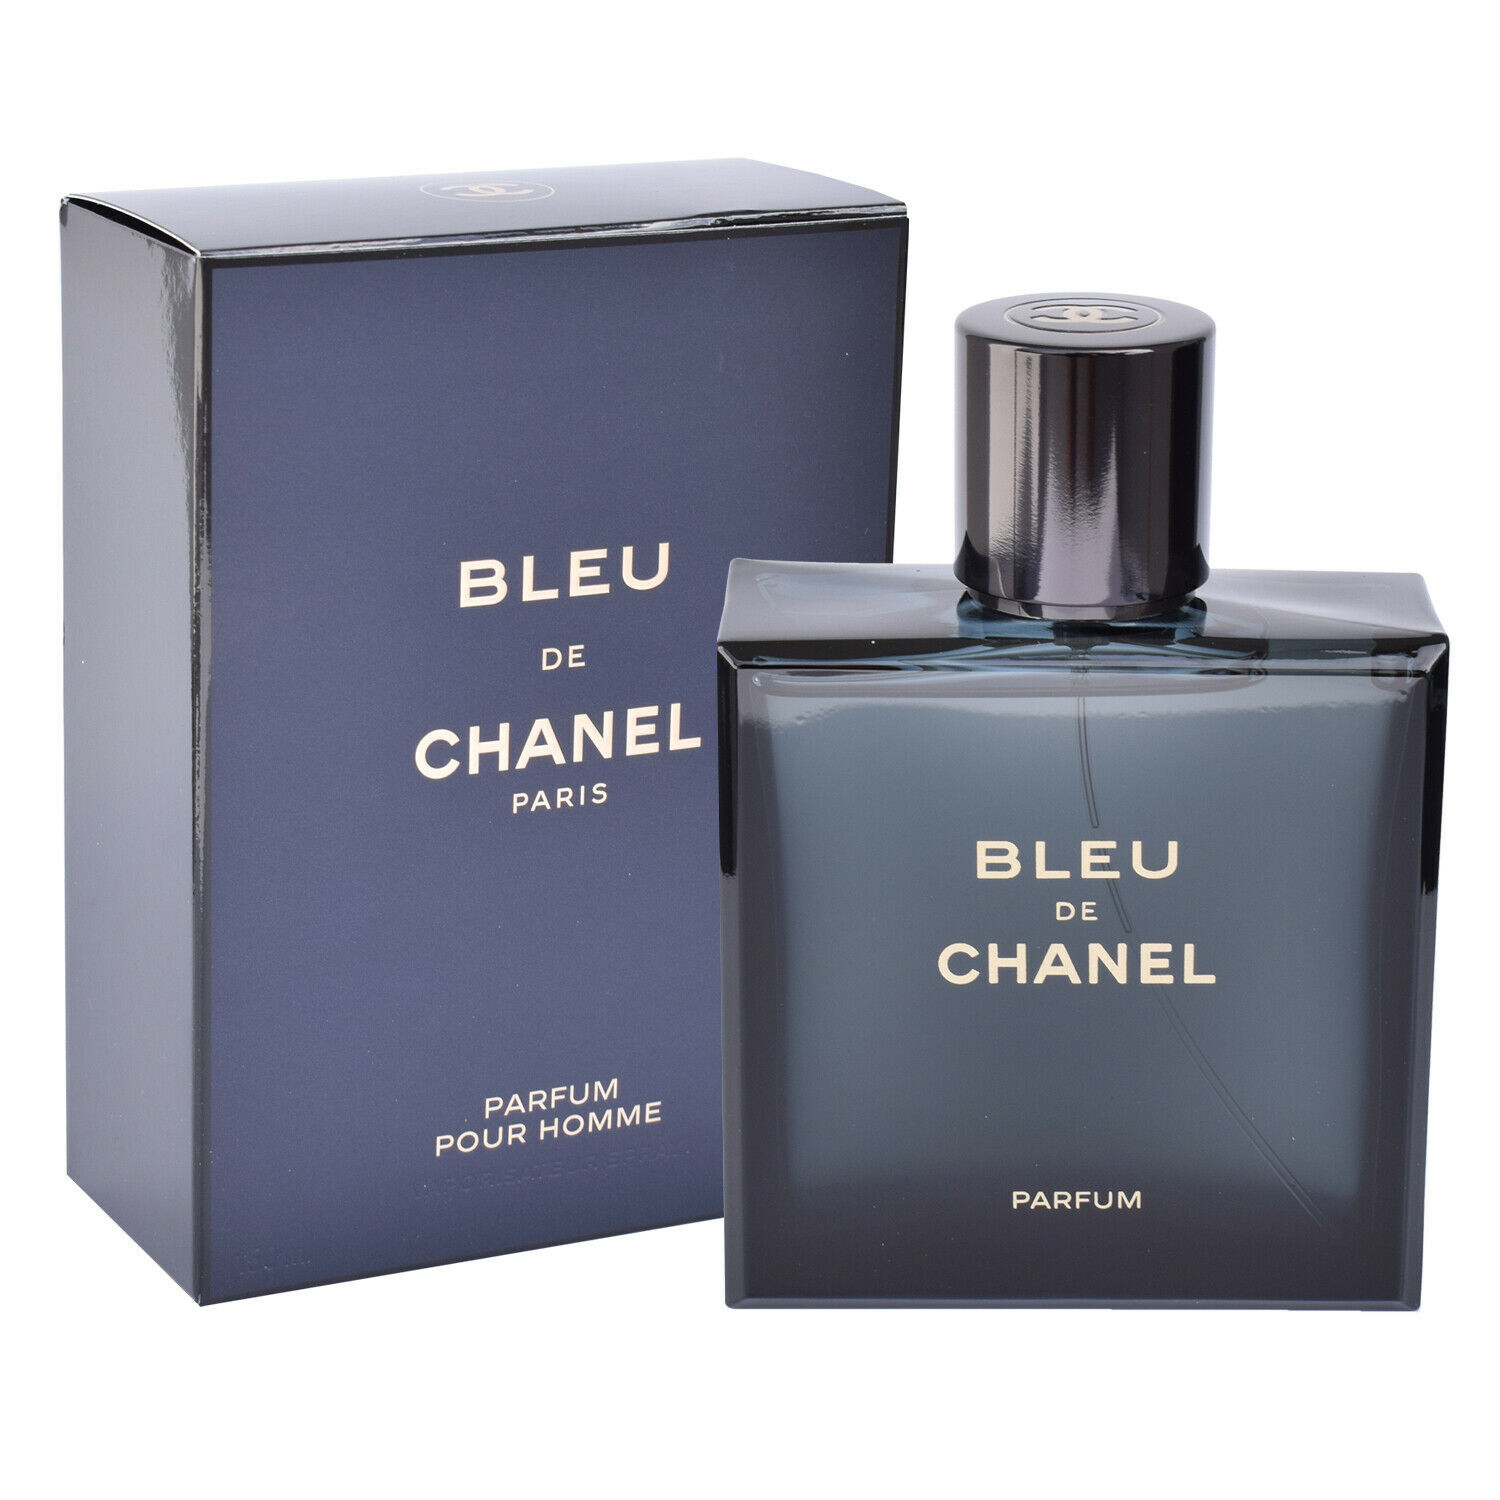 Bleu De Chanel 50ml Parfum Spray